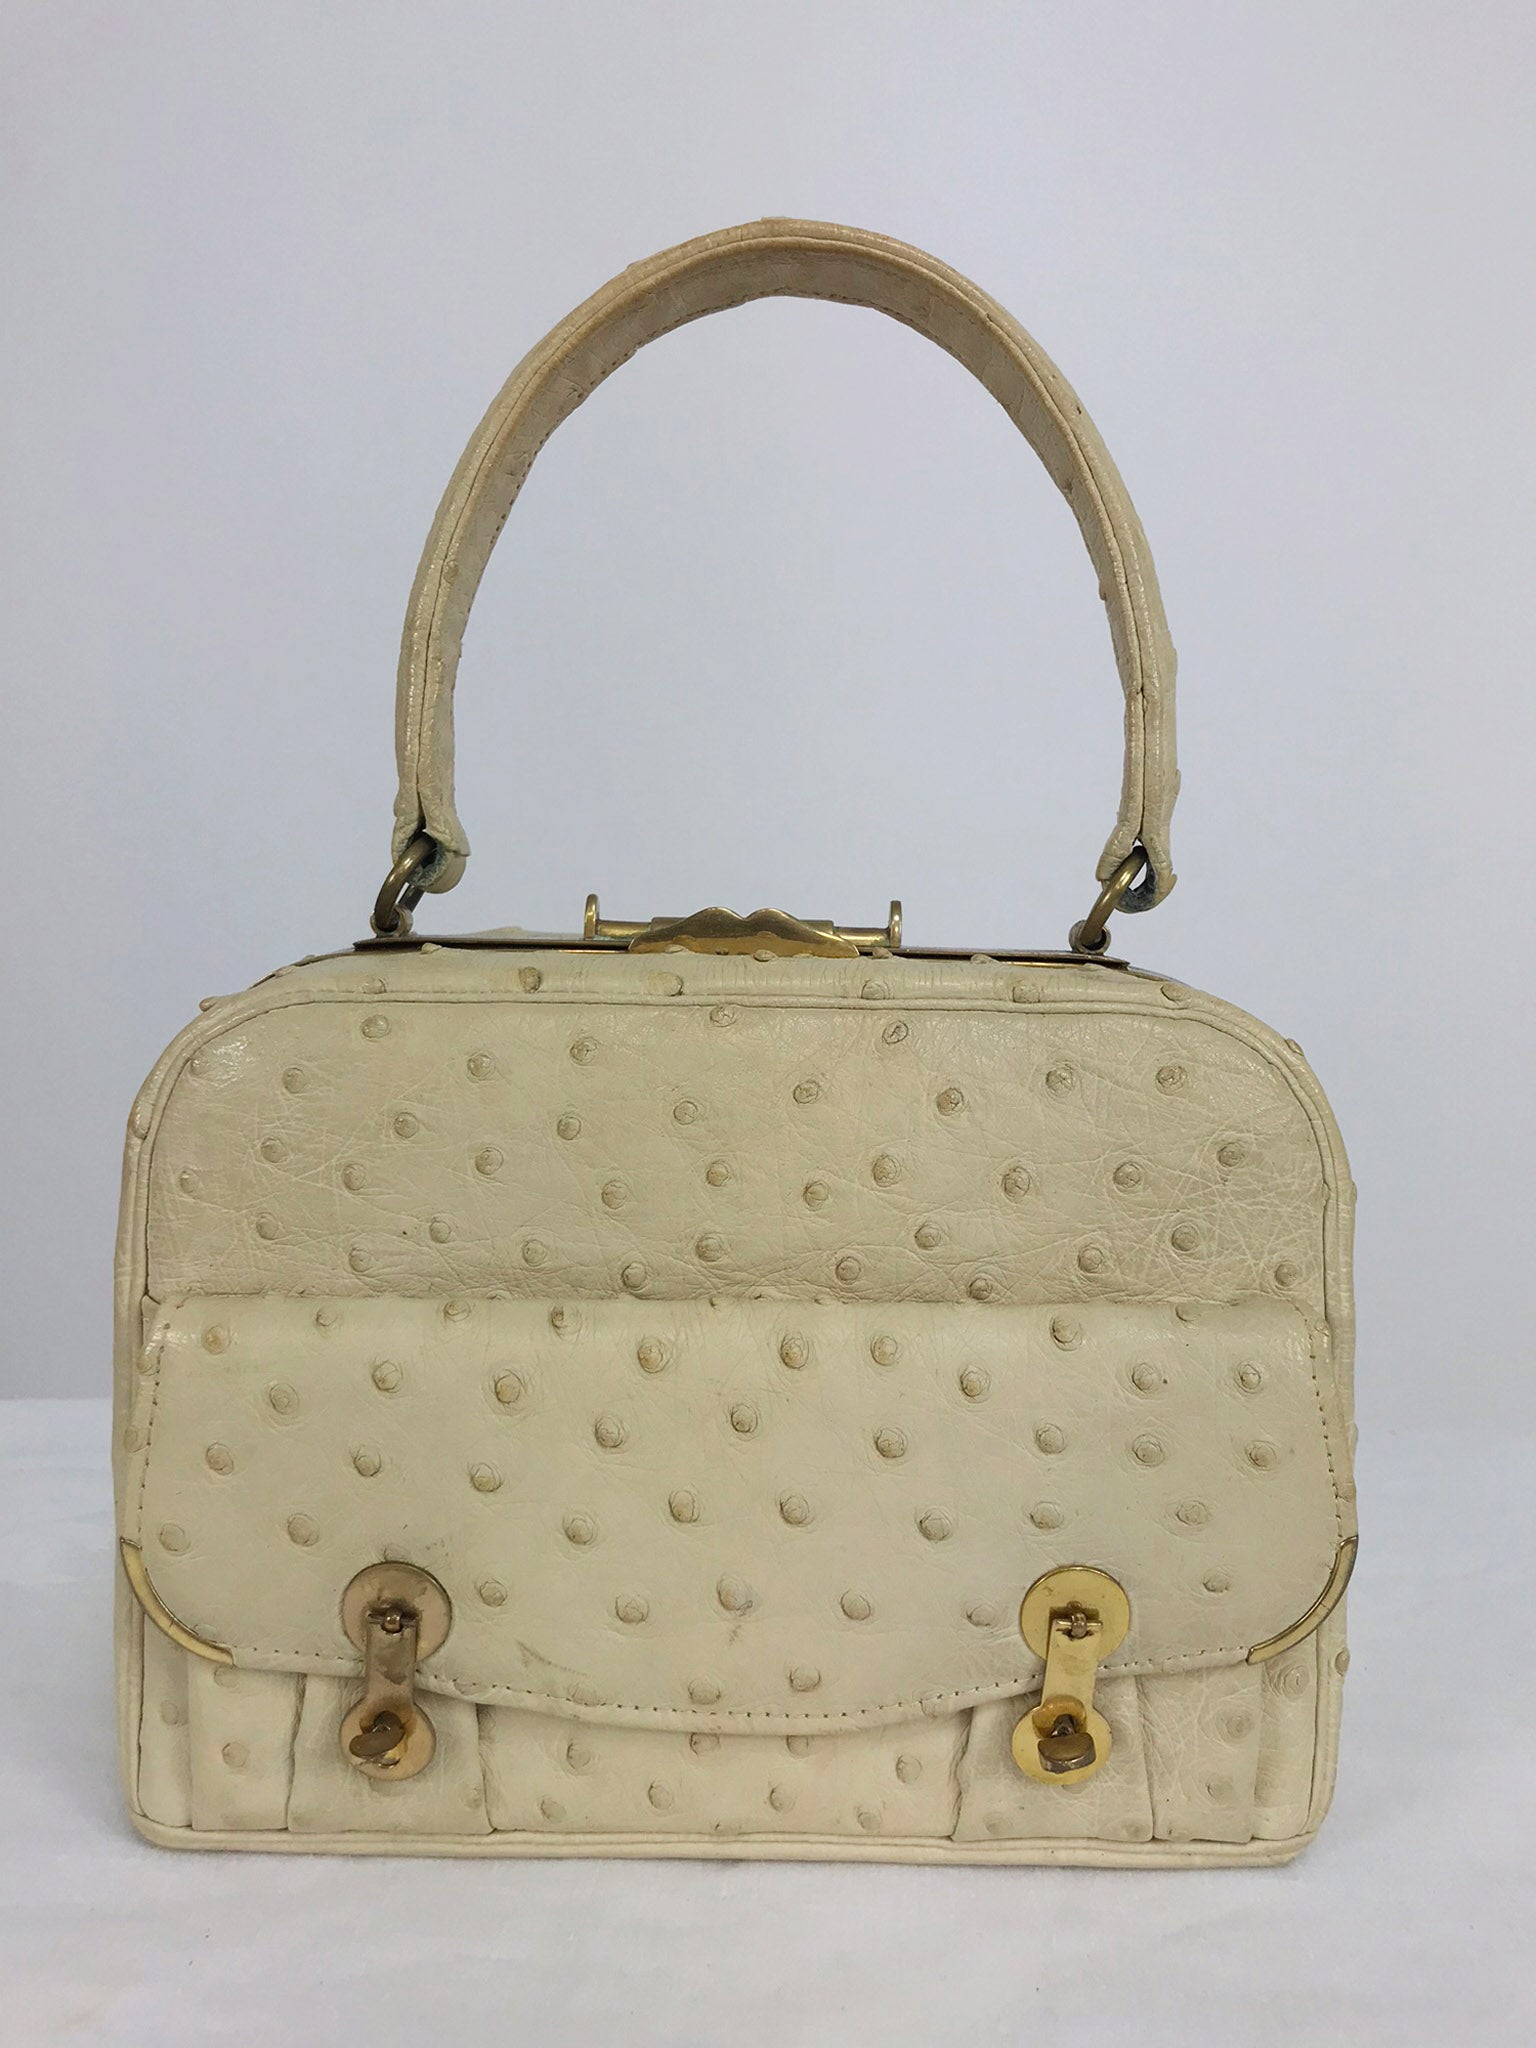 Caddy ostrich leather handbag